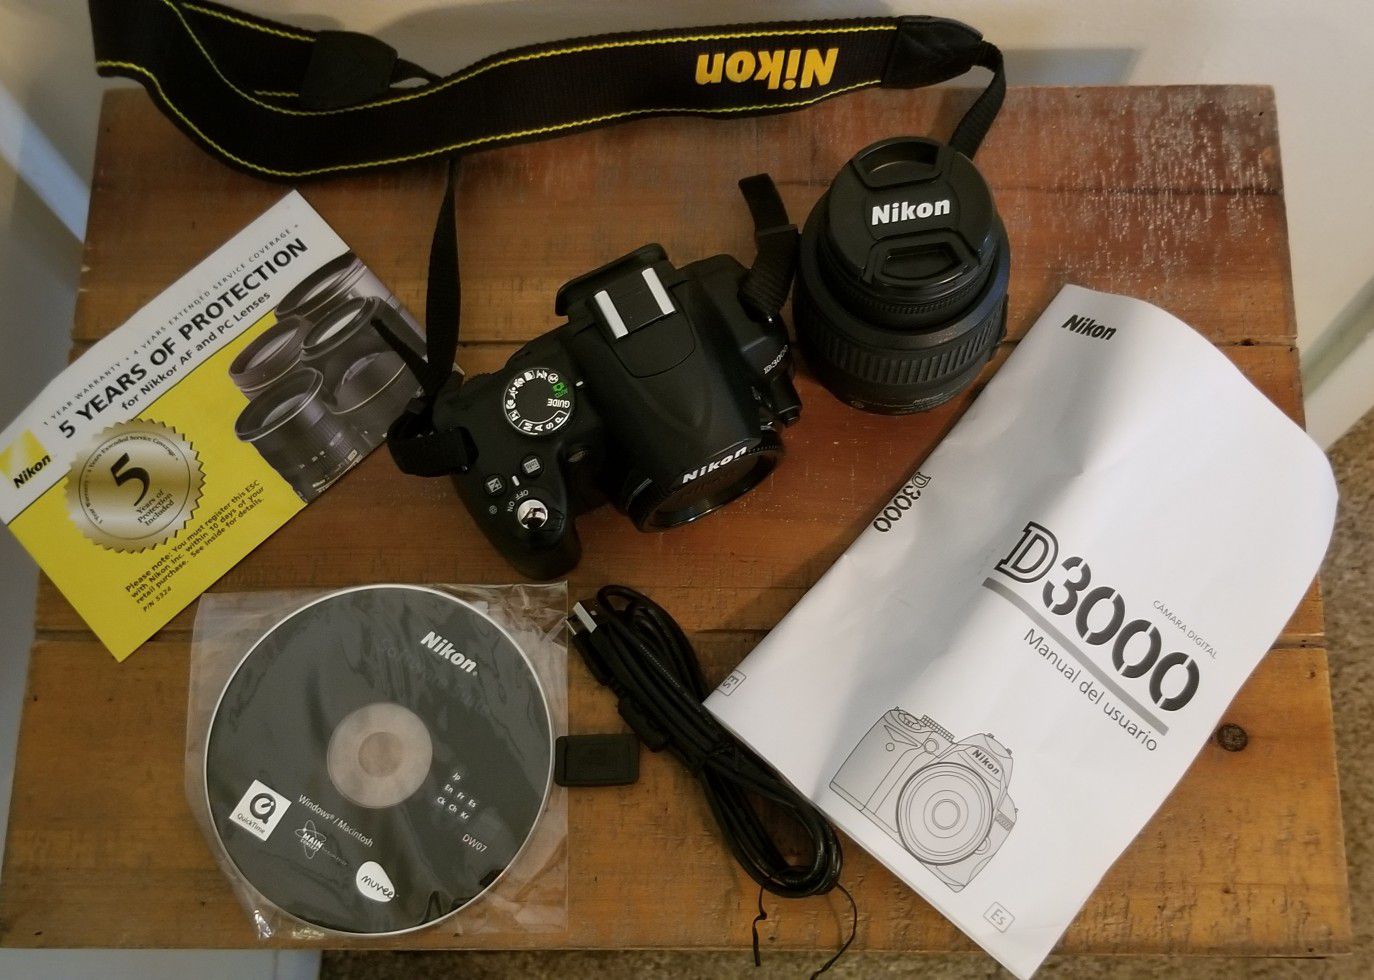 Nikon D3000 10MP Digital SLR Camera with DX VR Nikkor zoom lense and Lowepro storage one strap bag